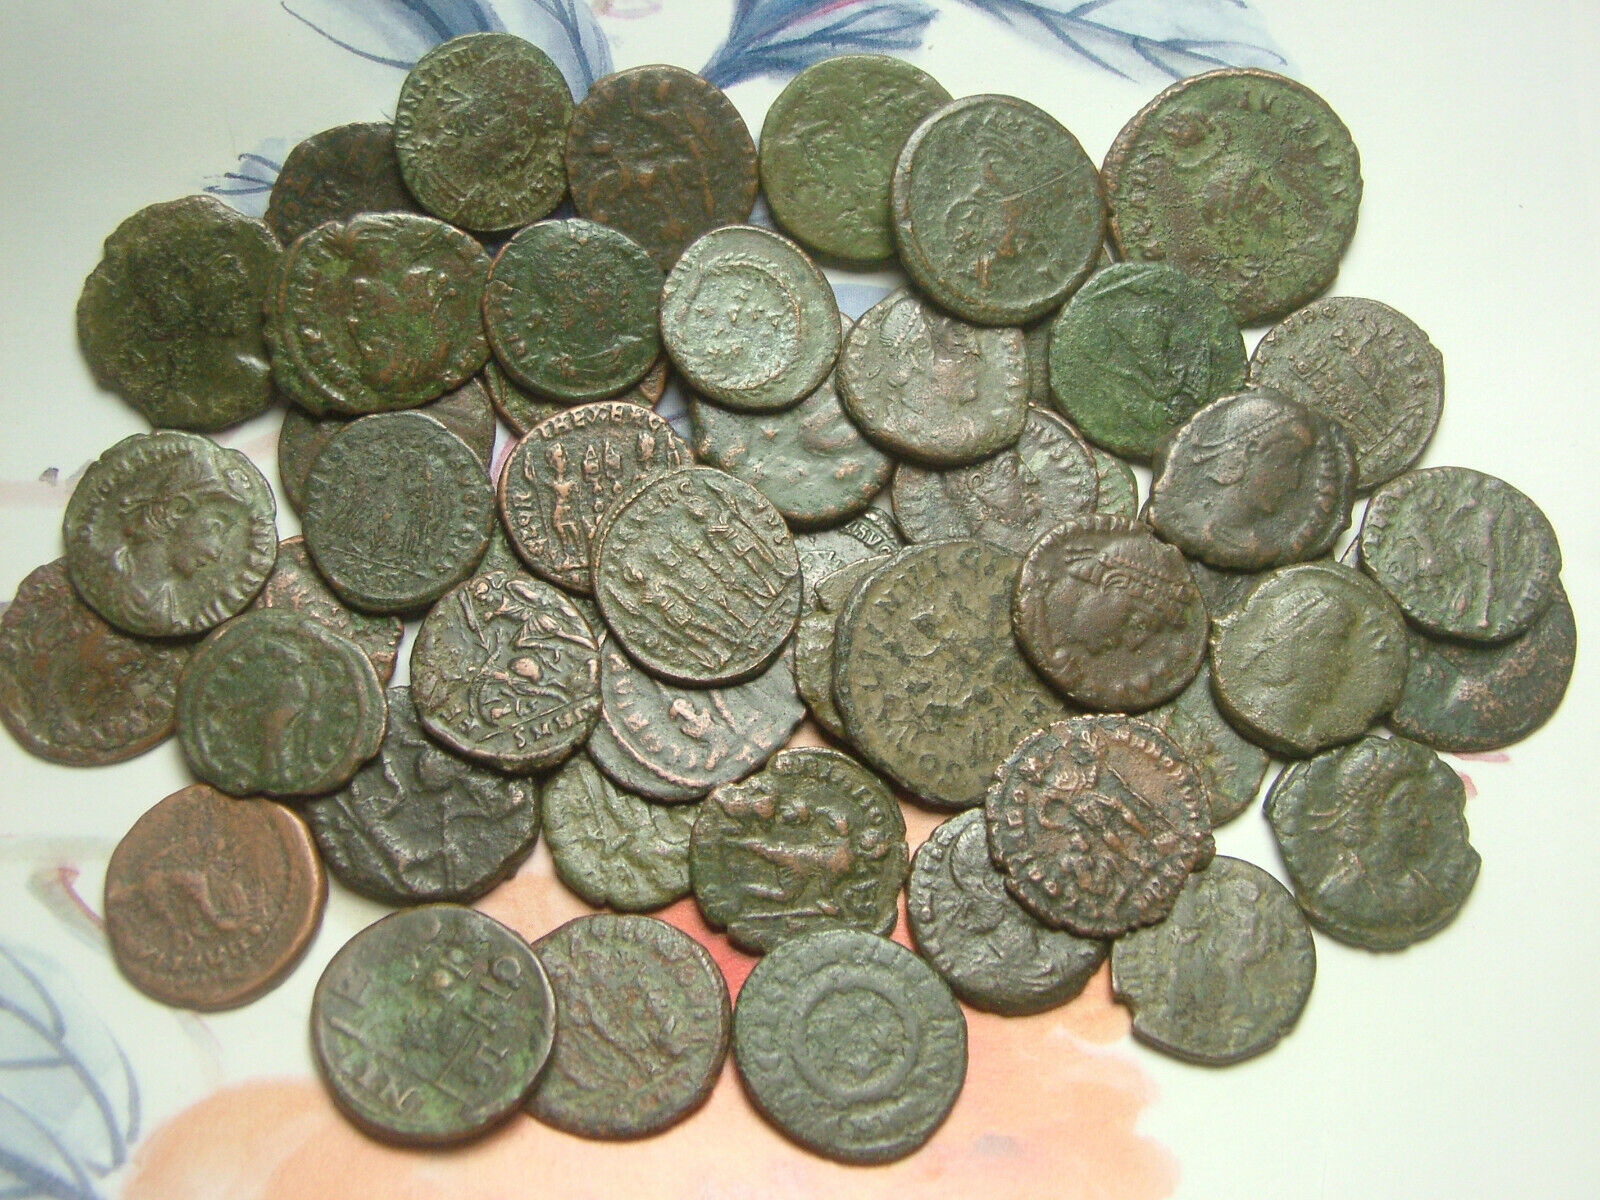 Lot 5 Ancient Roman coin Constantine Valentinian Licinius Consantius Claudius Без бренда - фотография #10